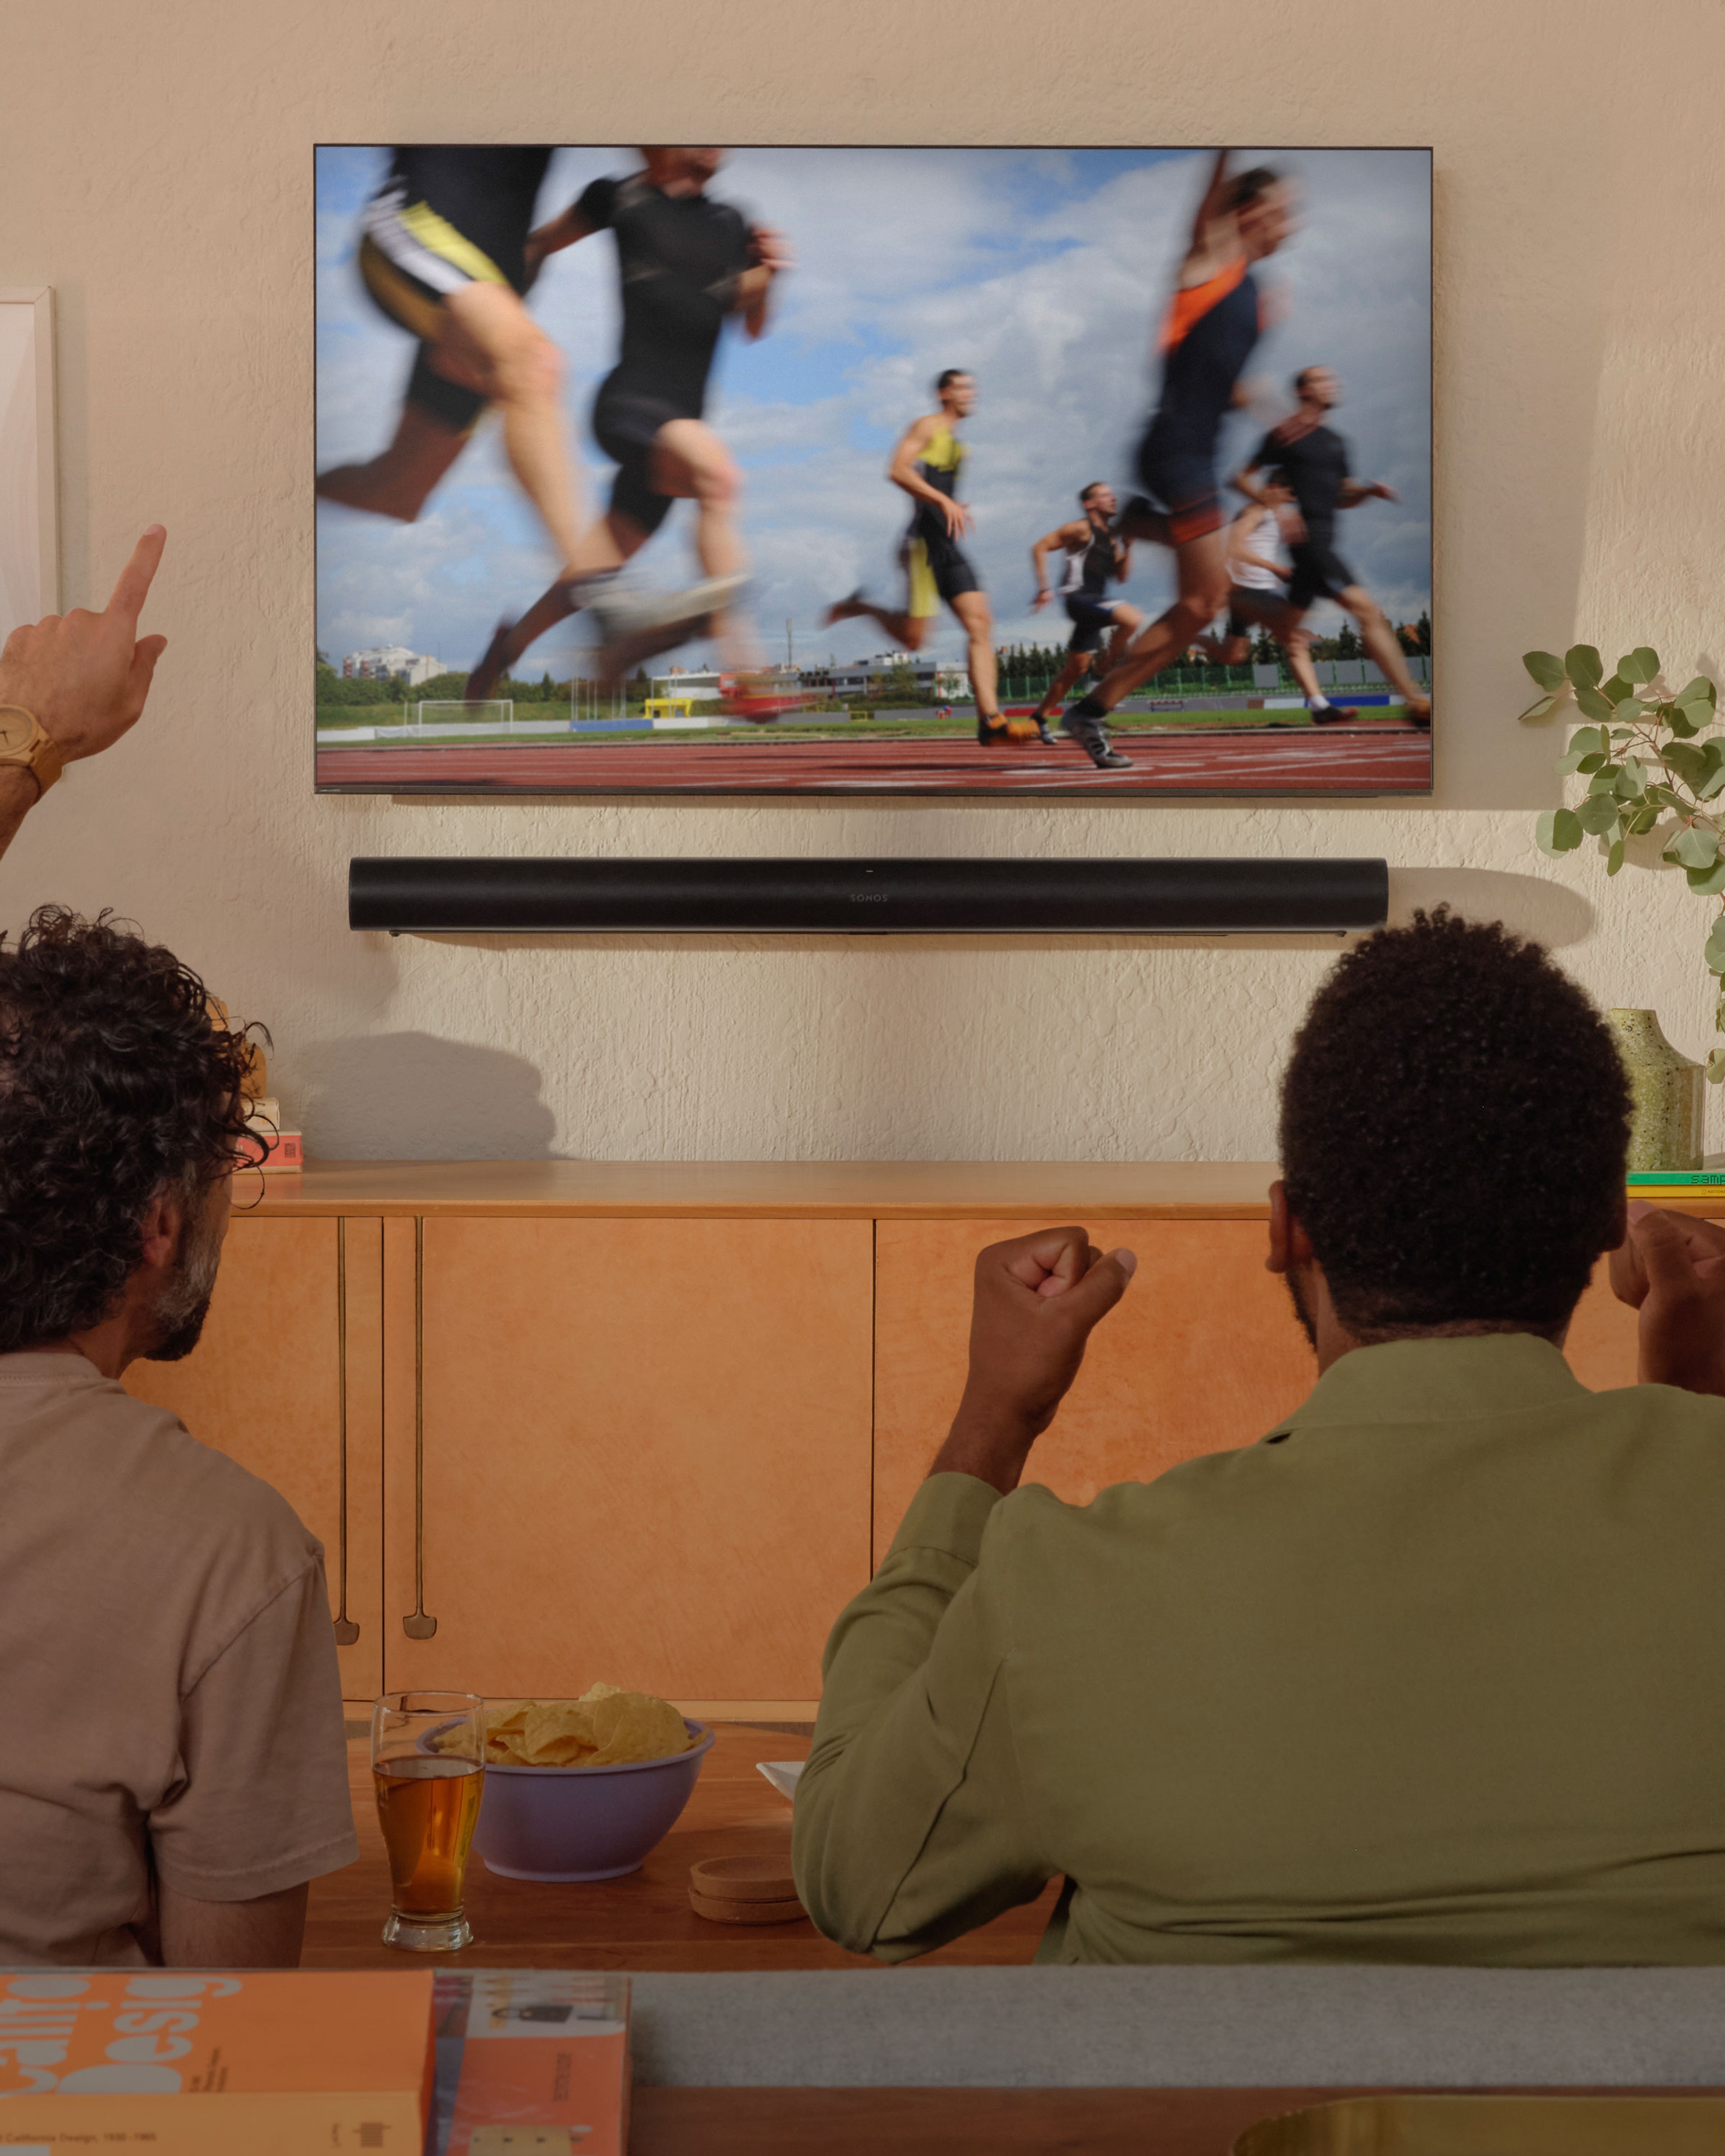 Dos personas viendo una carrera de atletismo en la tele con una Arc montada en la pared